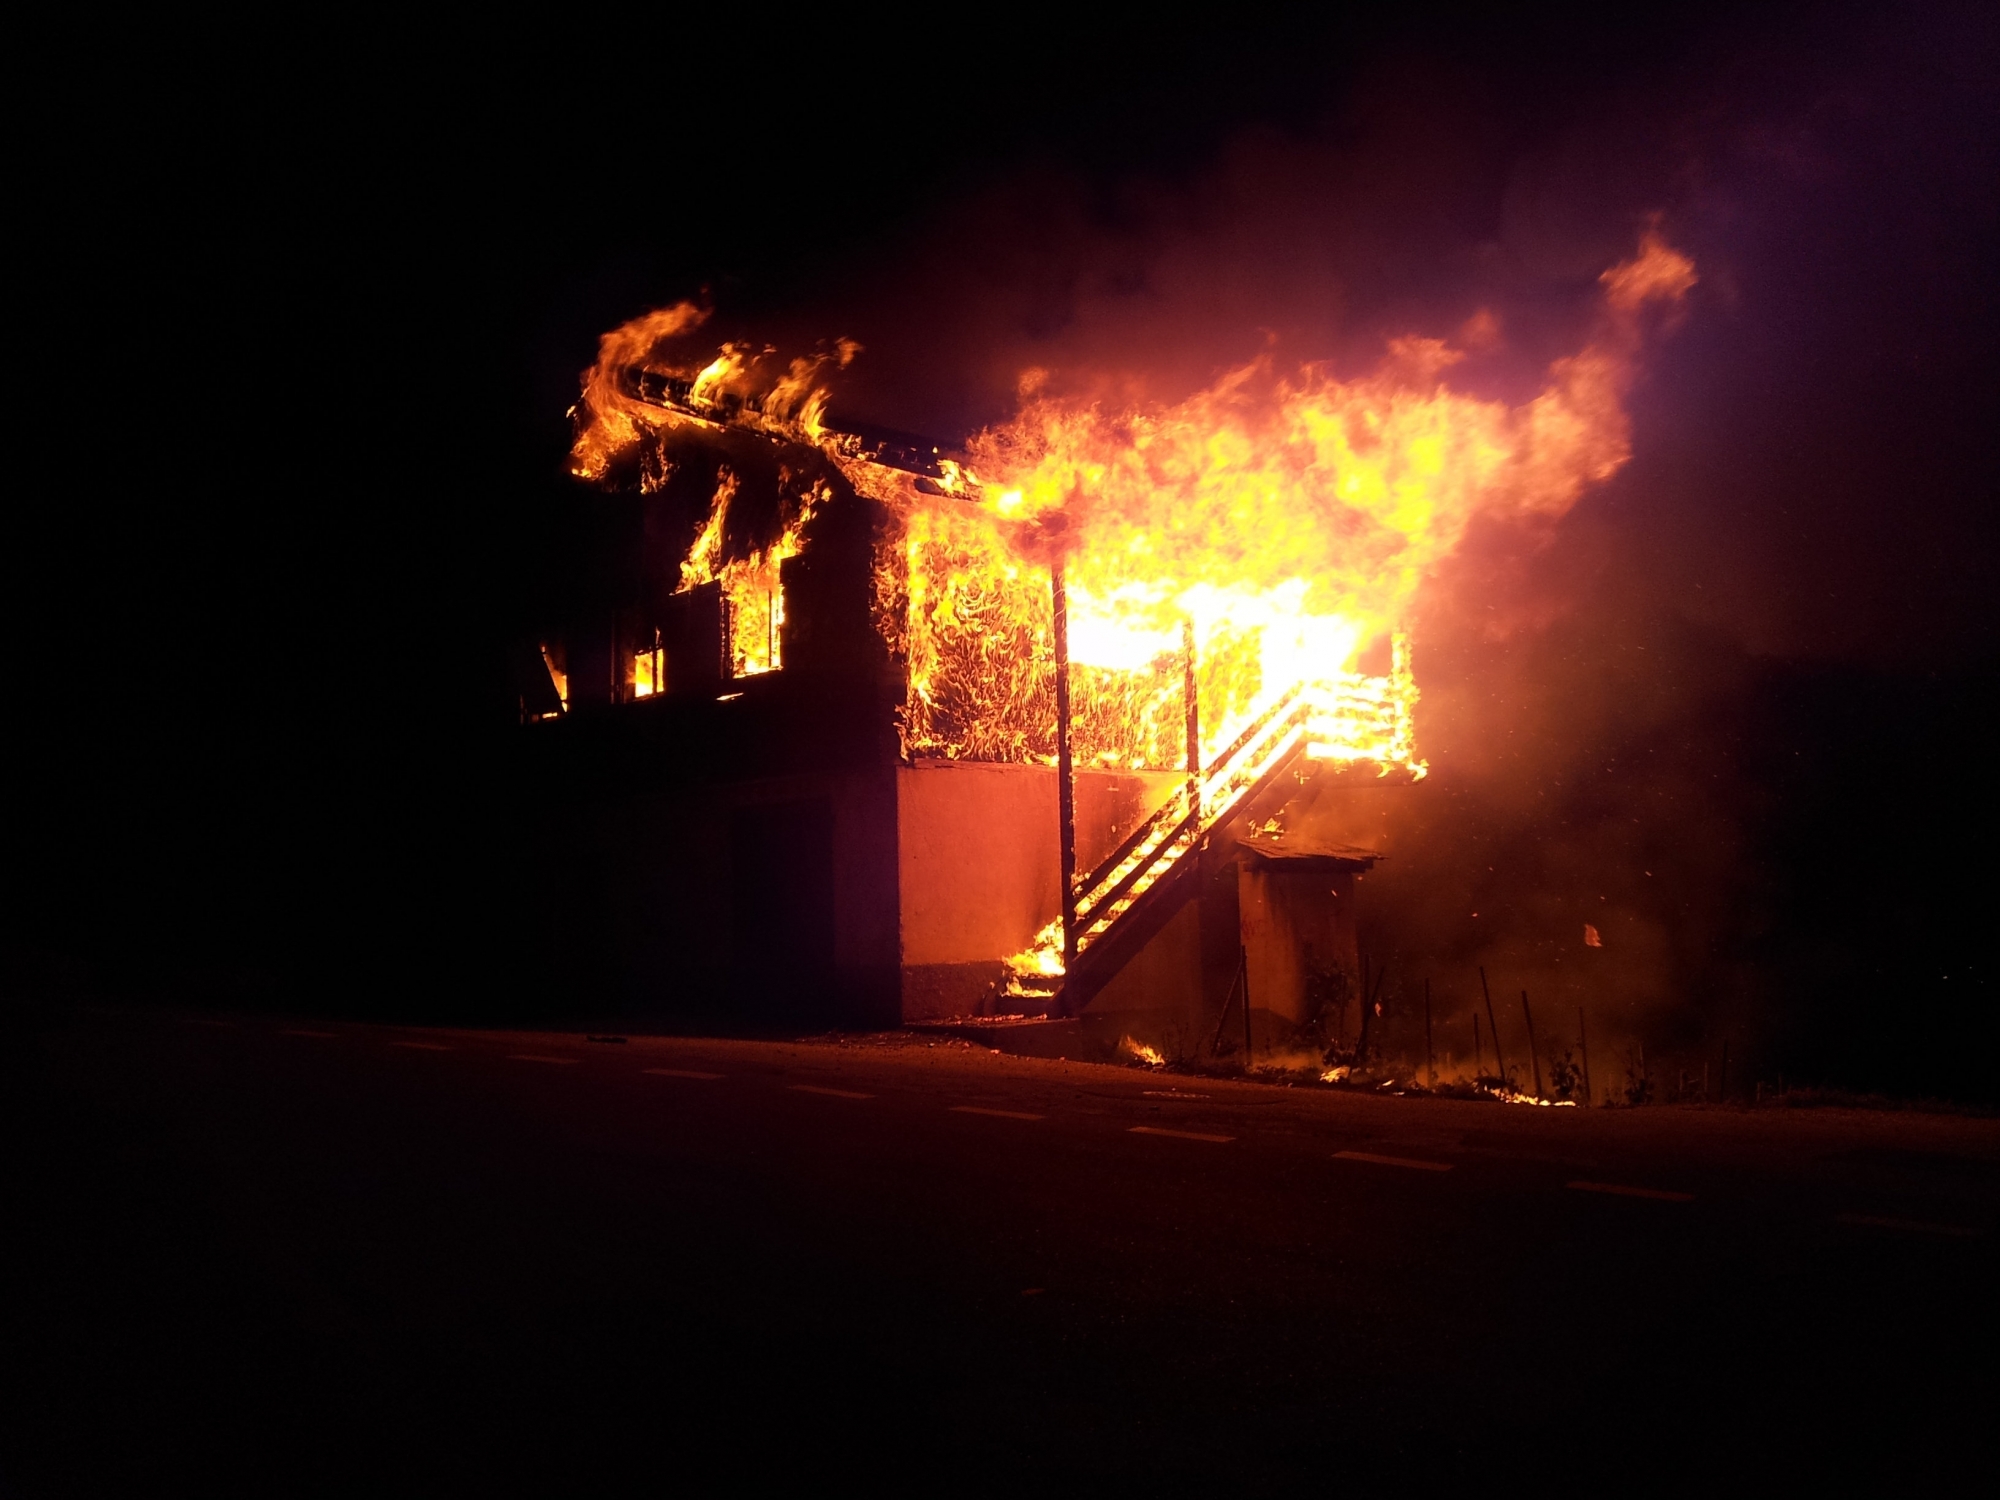 La ferme dans le village de Cortébert a été ravagée par les flammes en janvier 2021. 45 veaux avaient perdu la vie dans l'incendie (image d'illustration).